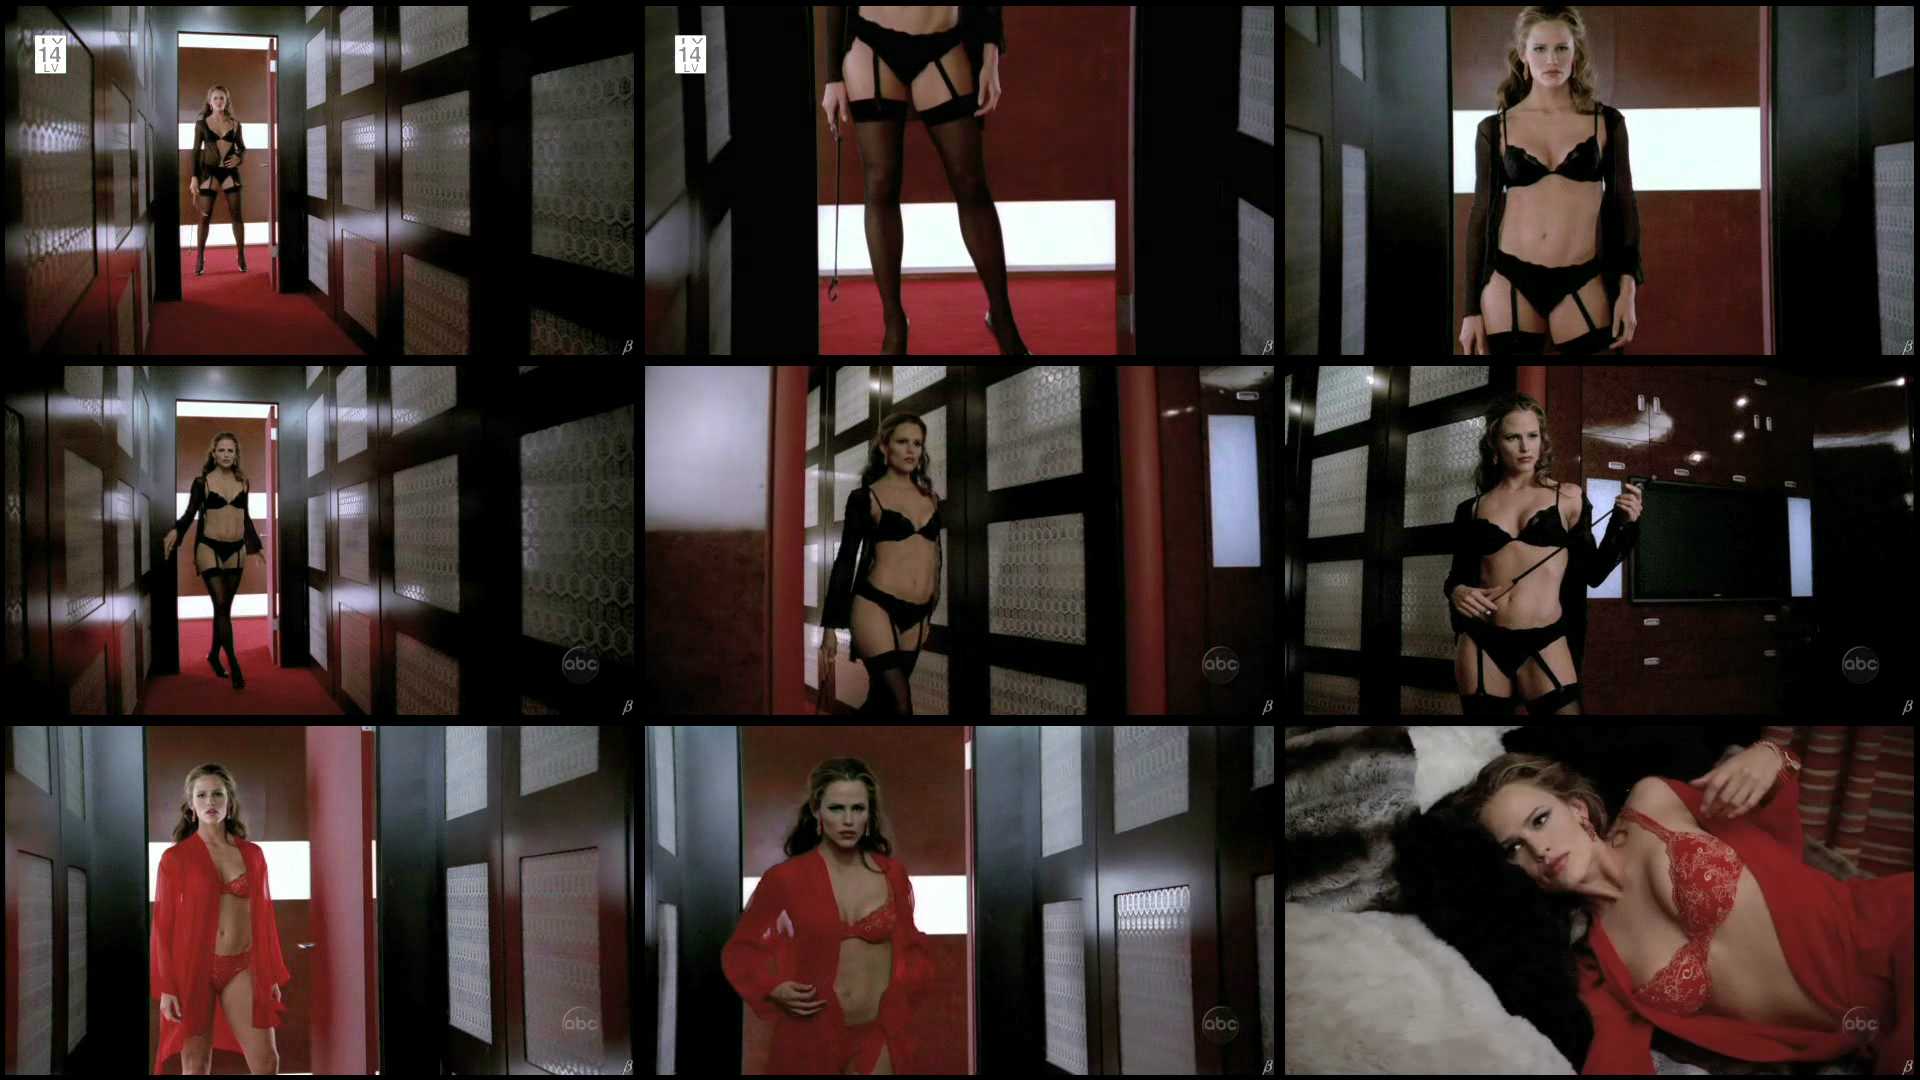 Дженнифер Гарнер снялась голой в эротических сценах на съемочной площадке.